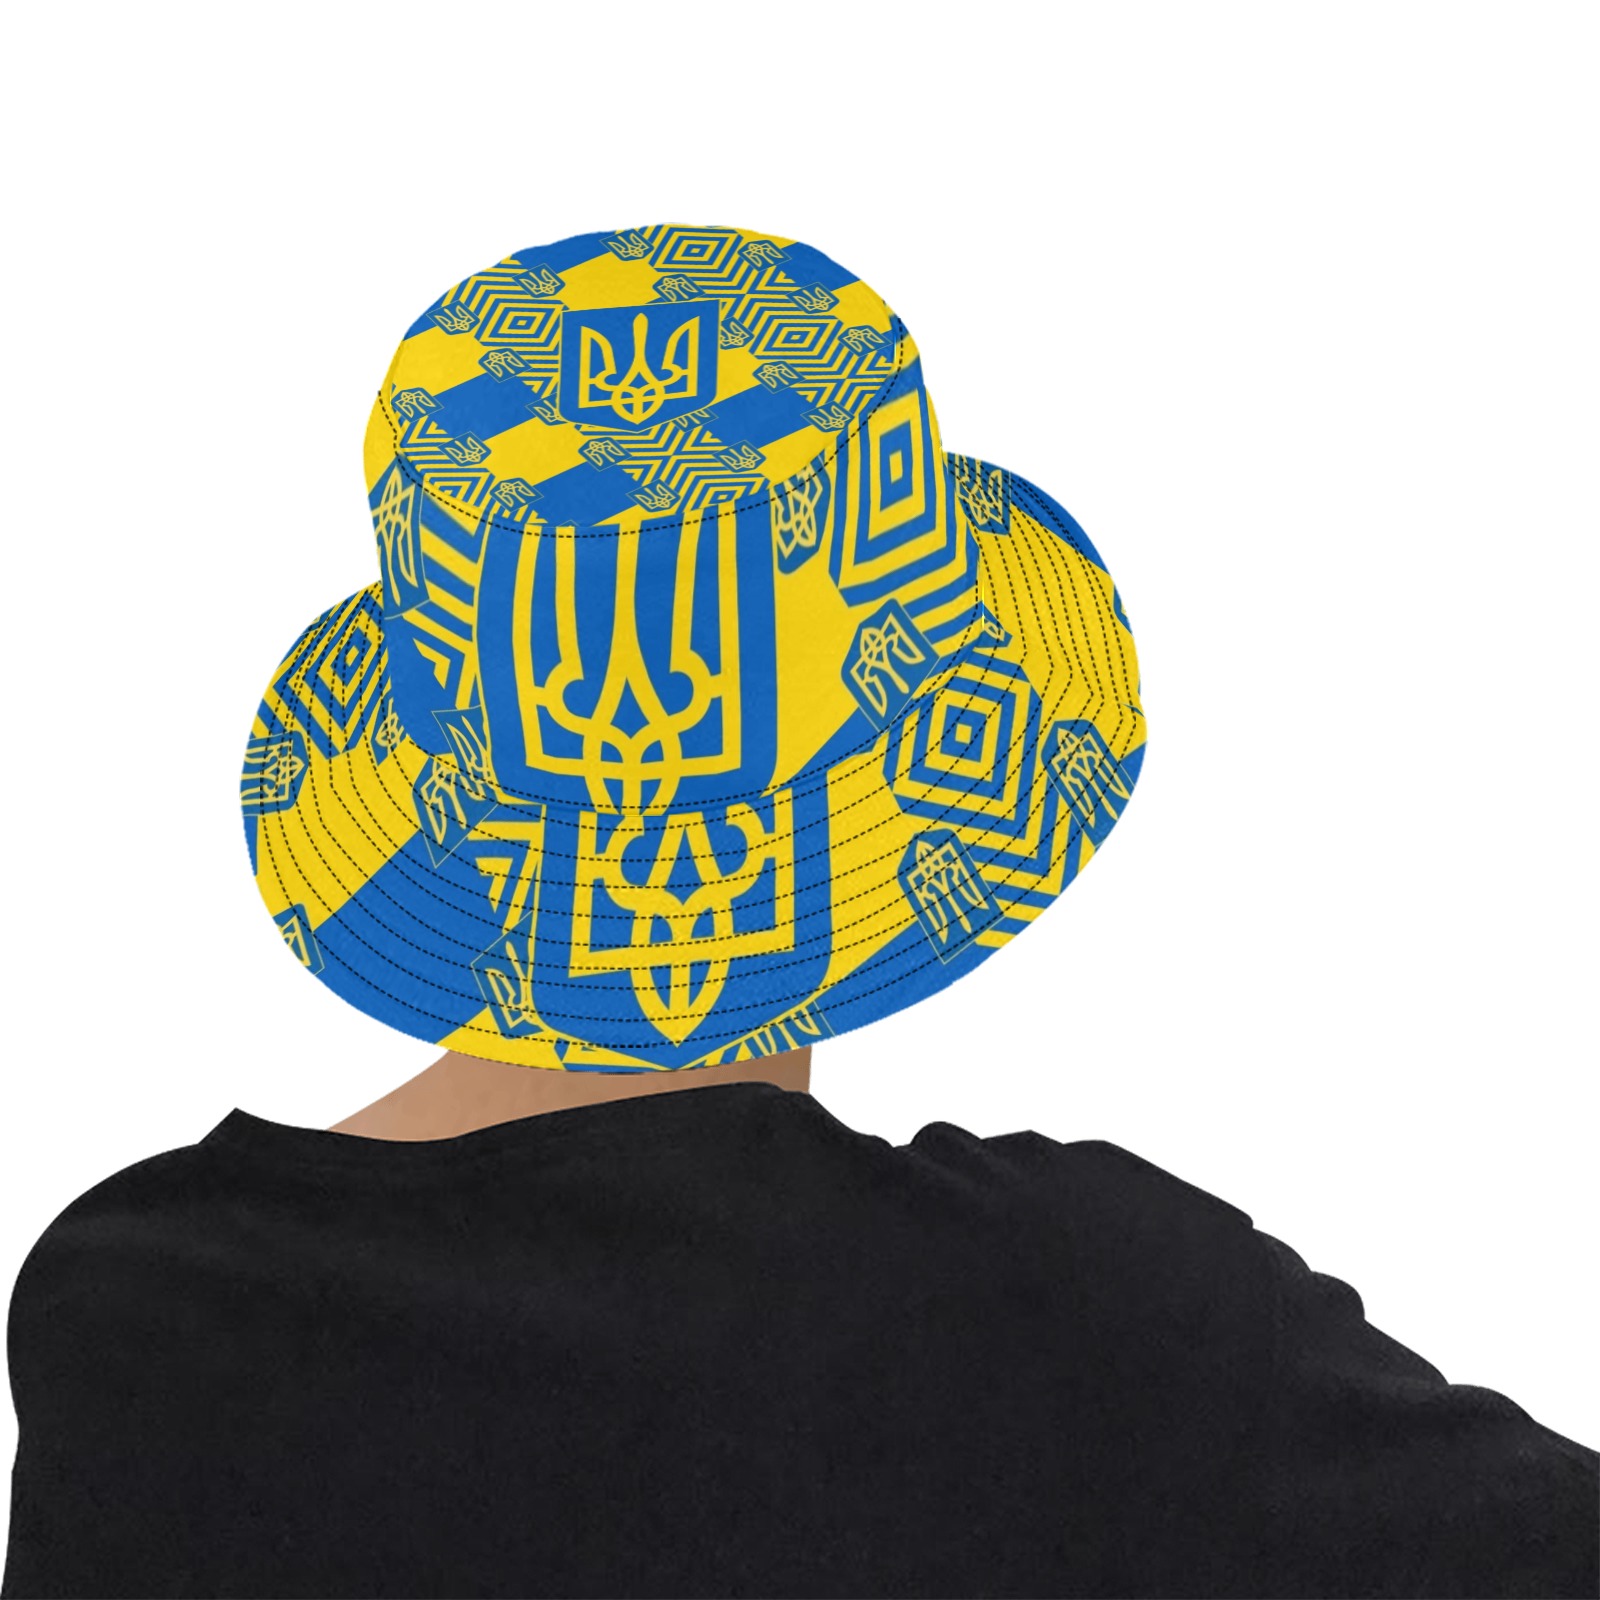 UKRAINE 2 Unisex Summer Bucket Hat